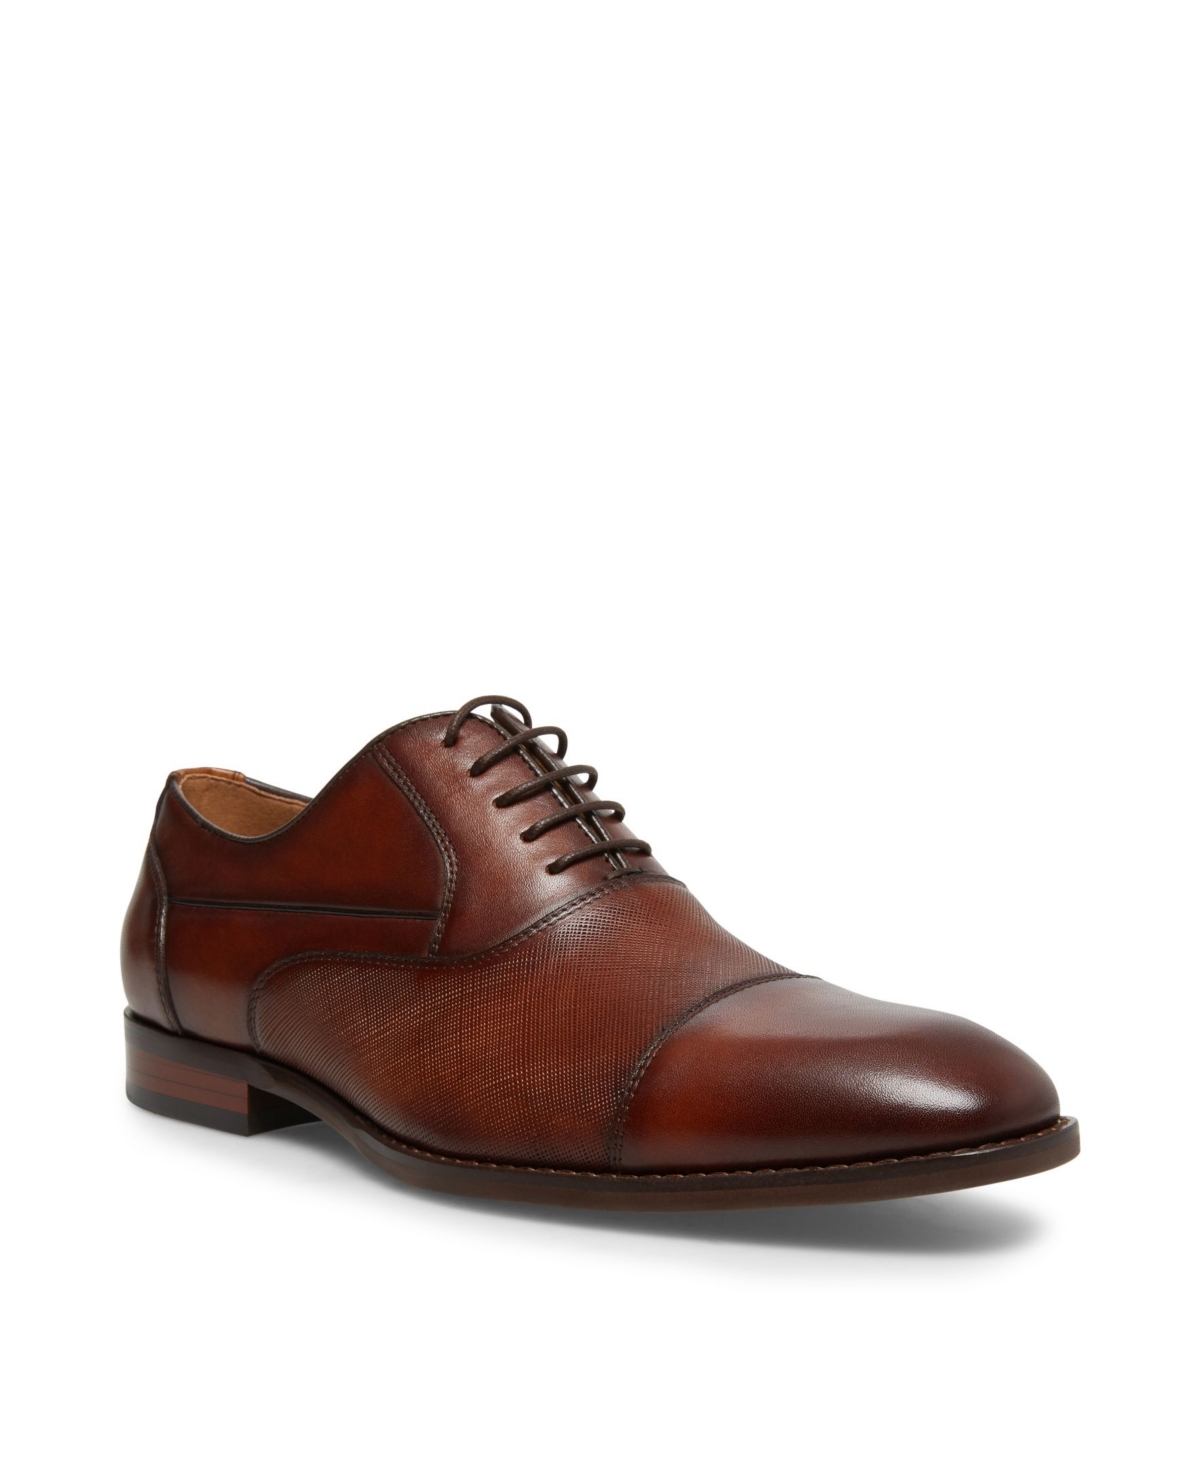 Men's Proctr Oxford Shoes - Tan Leather